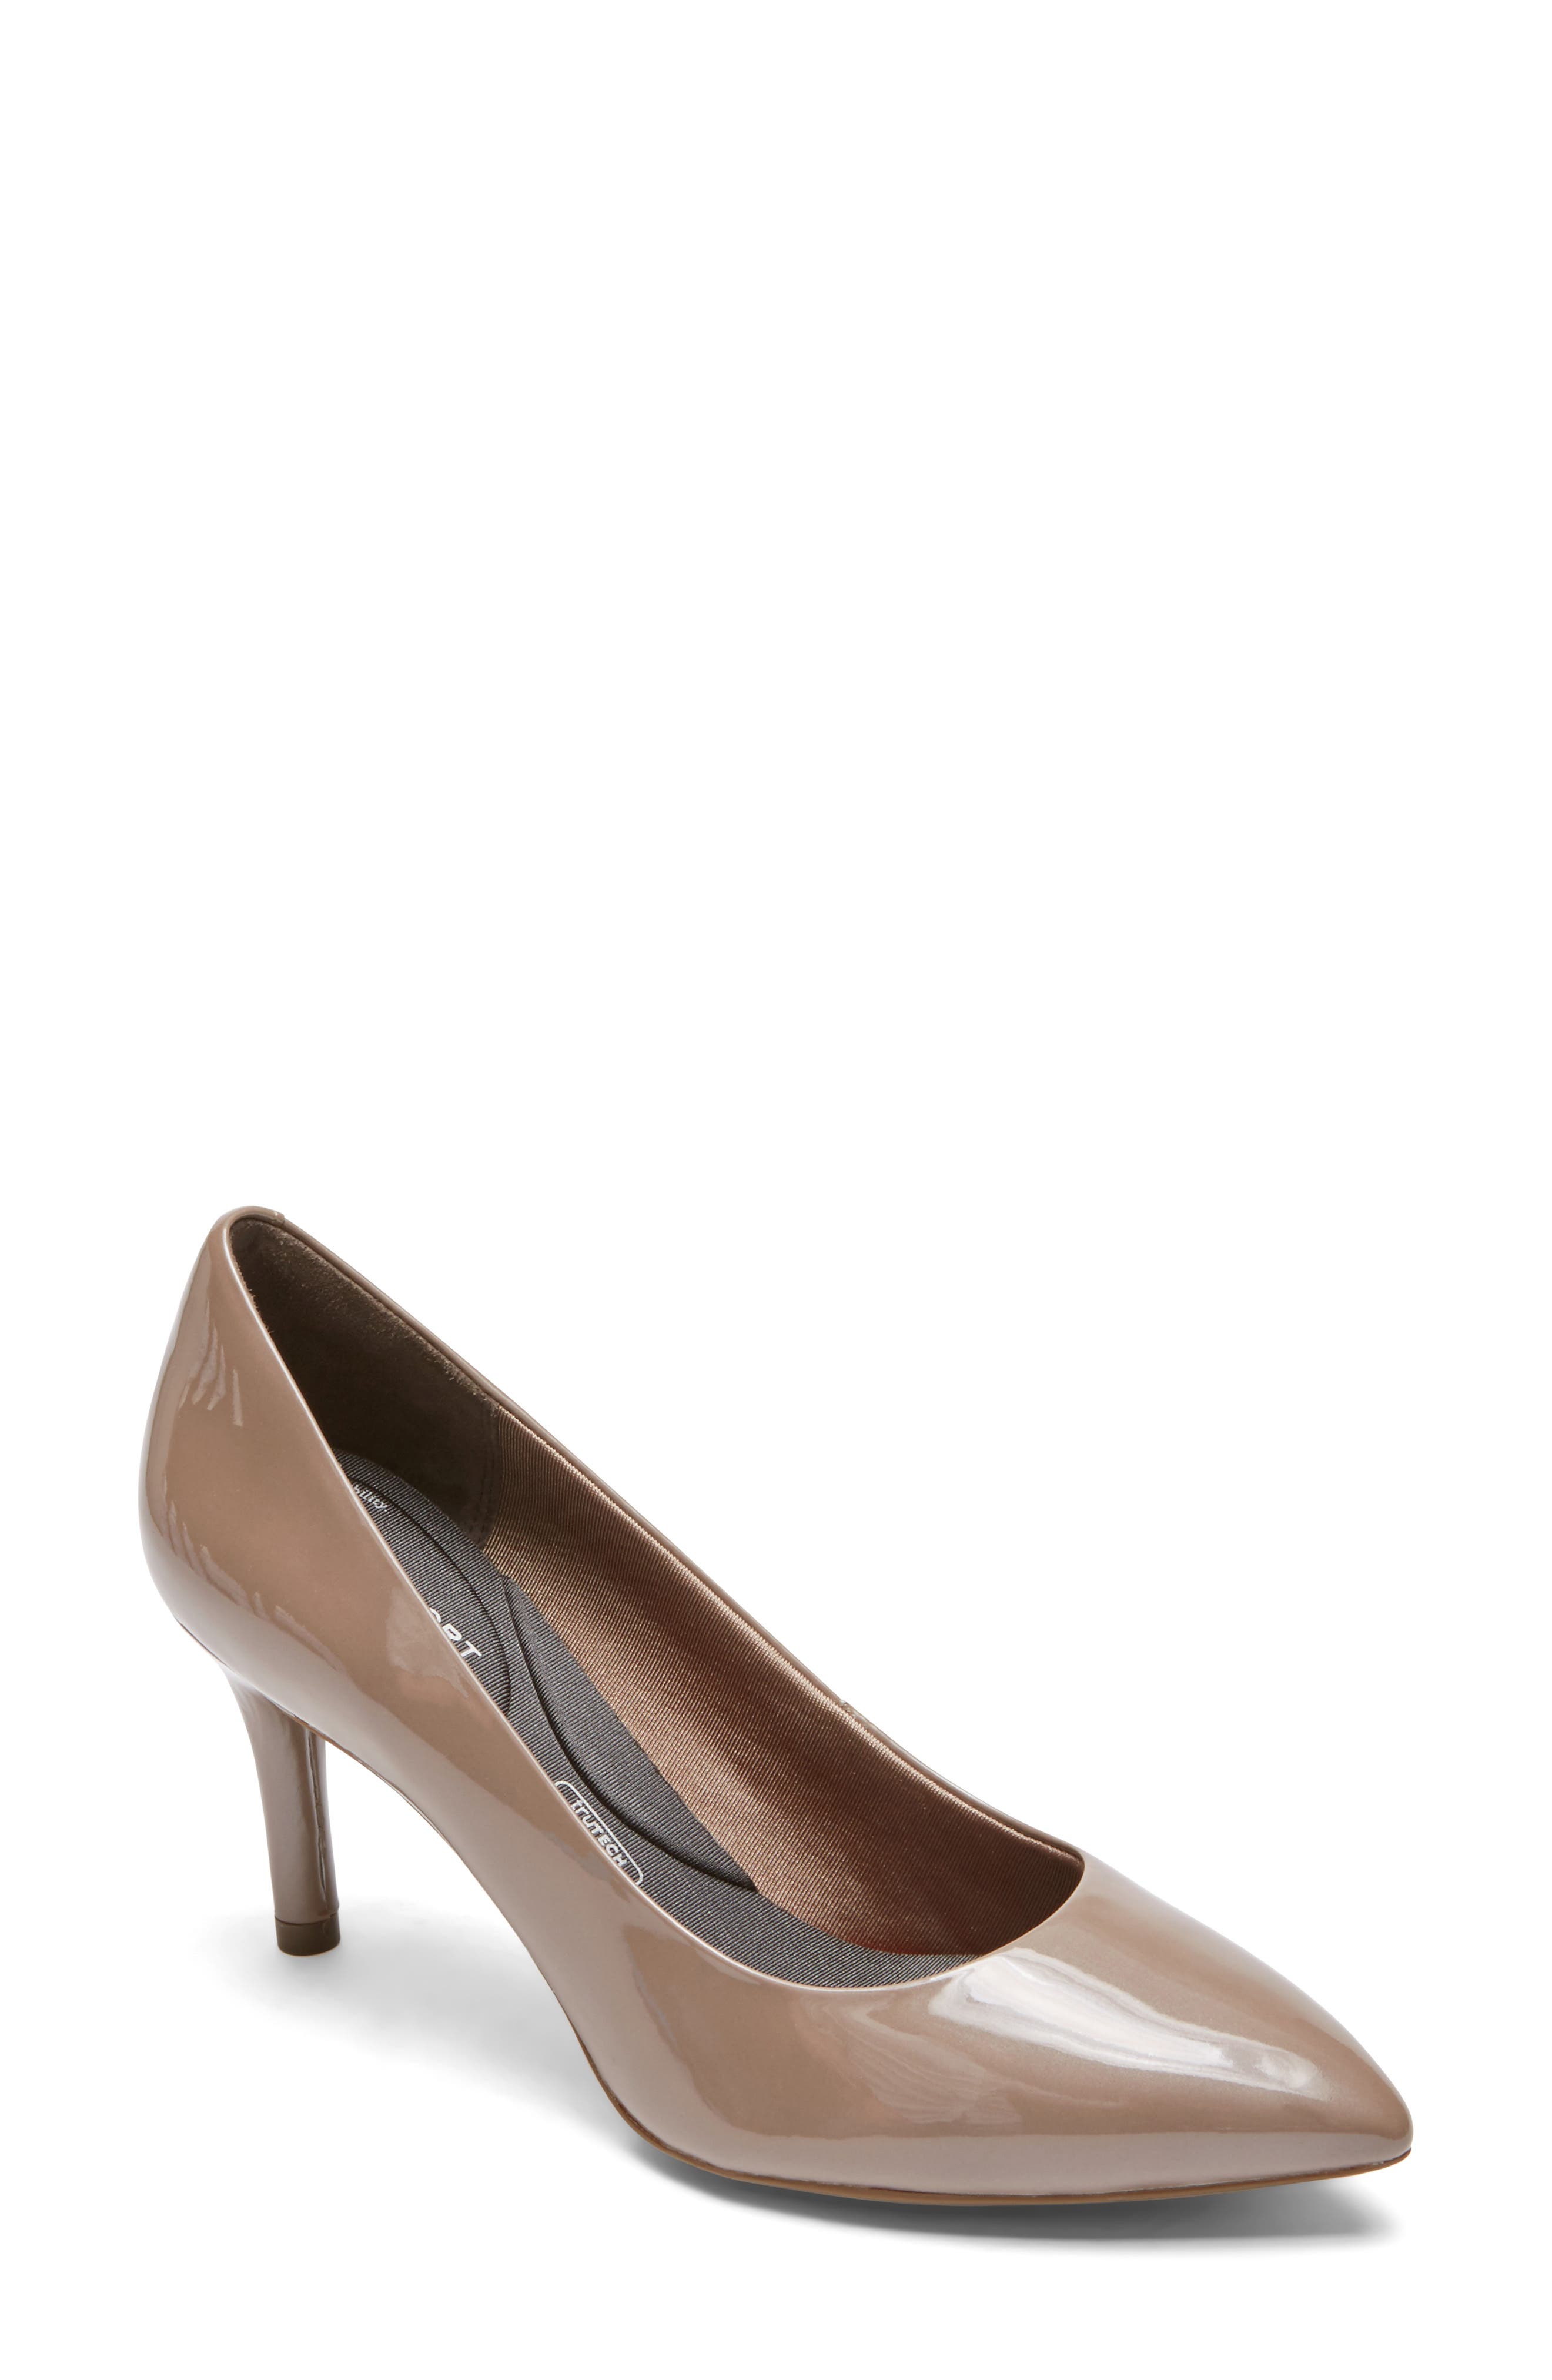 nordstrom comfort heels